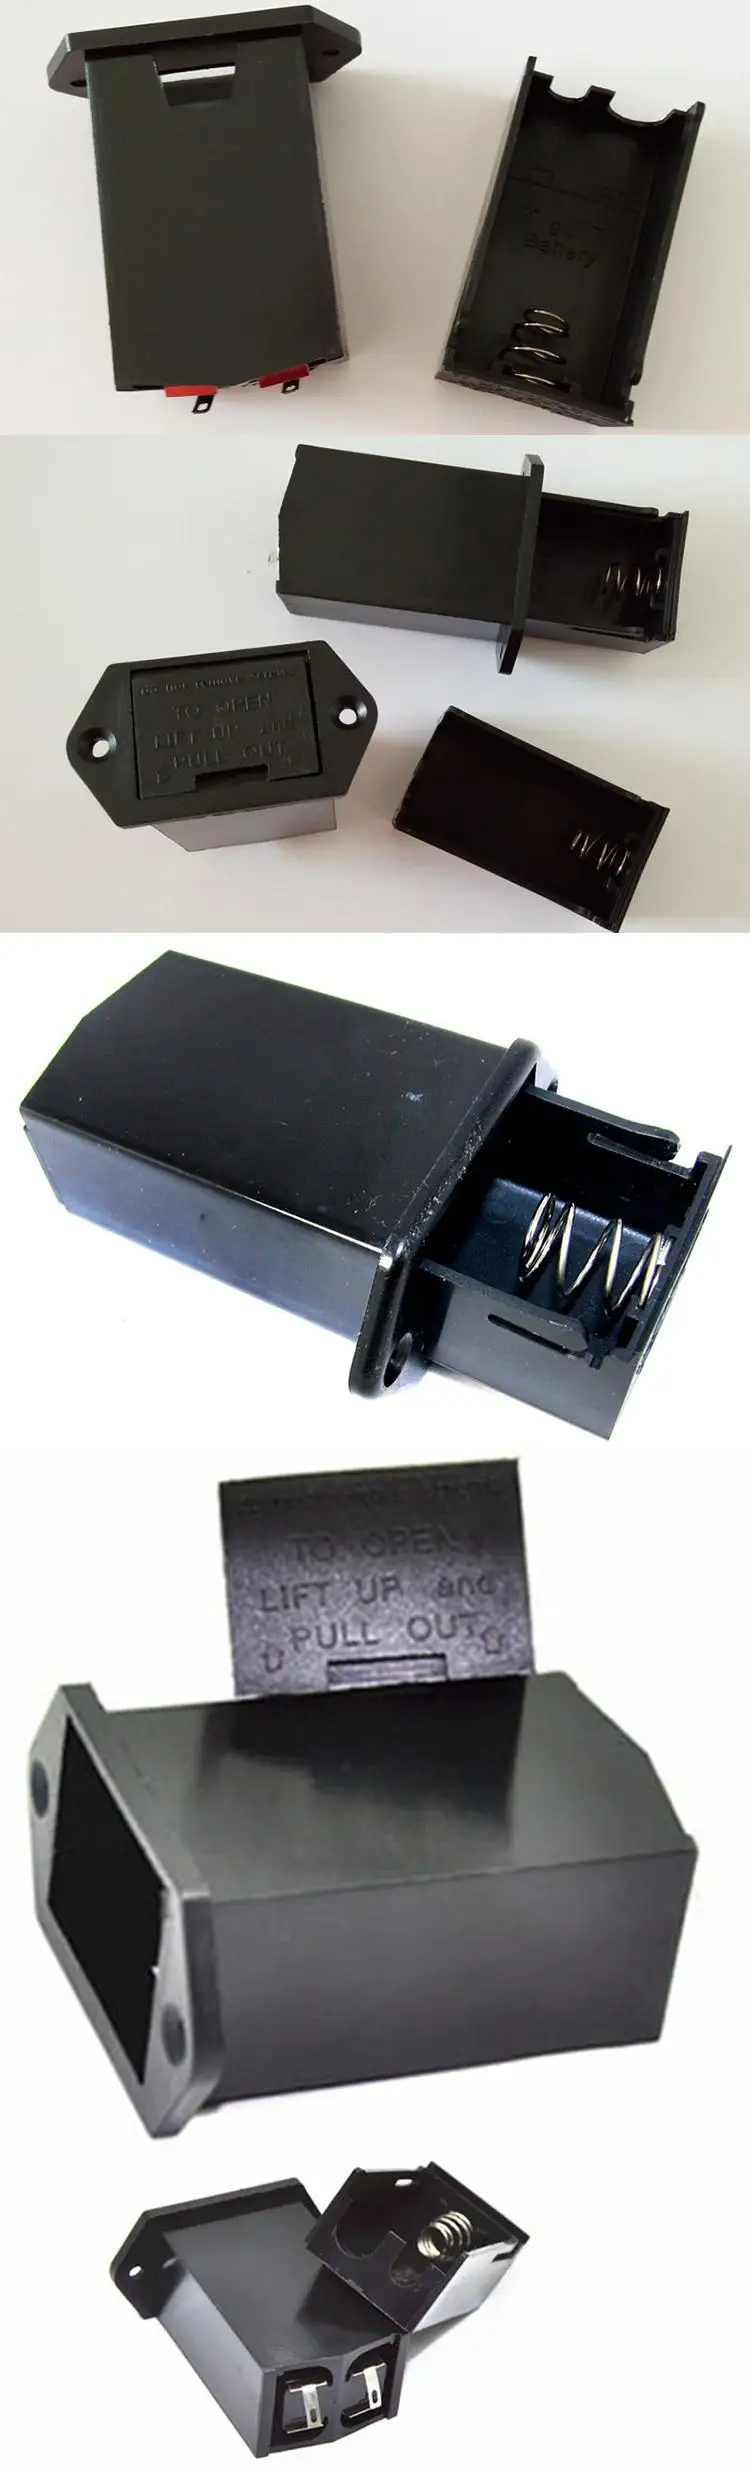 Hot Sale 9V Panel Mount Battery Holder Case Box Black.U*sh